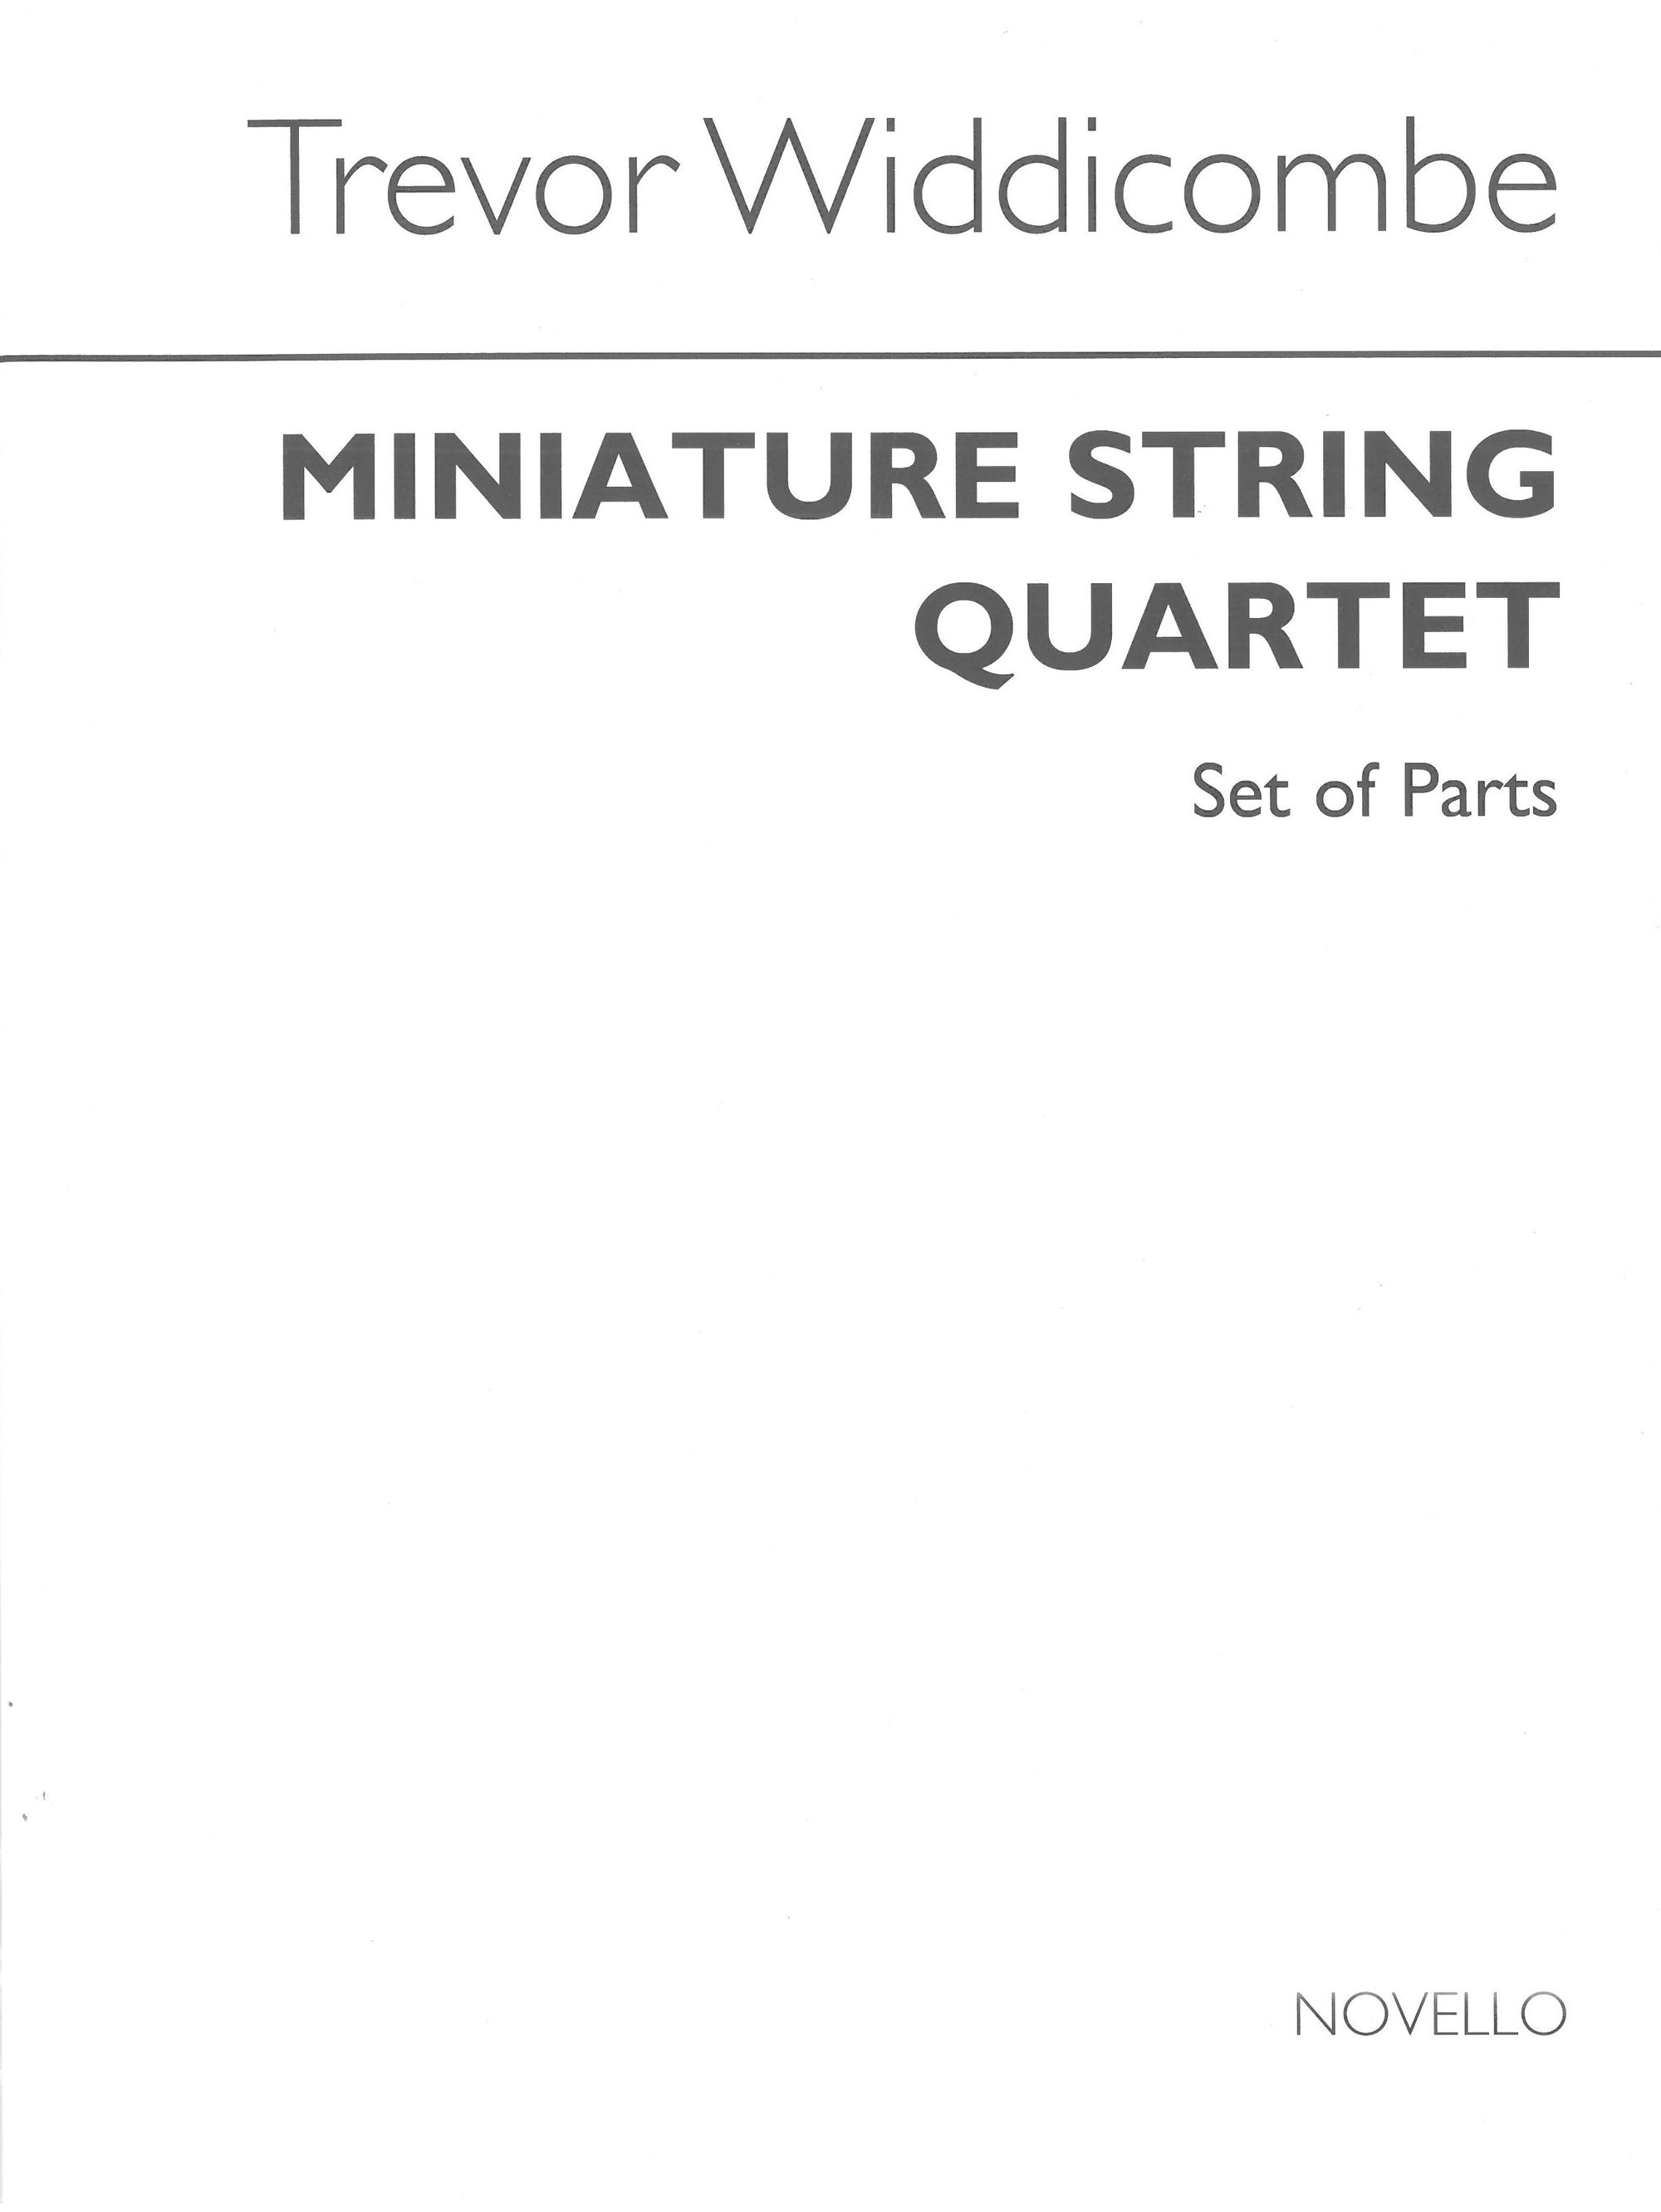 Widdicombe: Miniature String Quartet